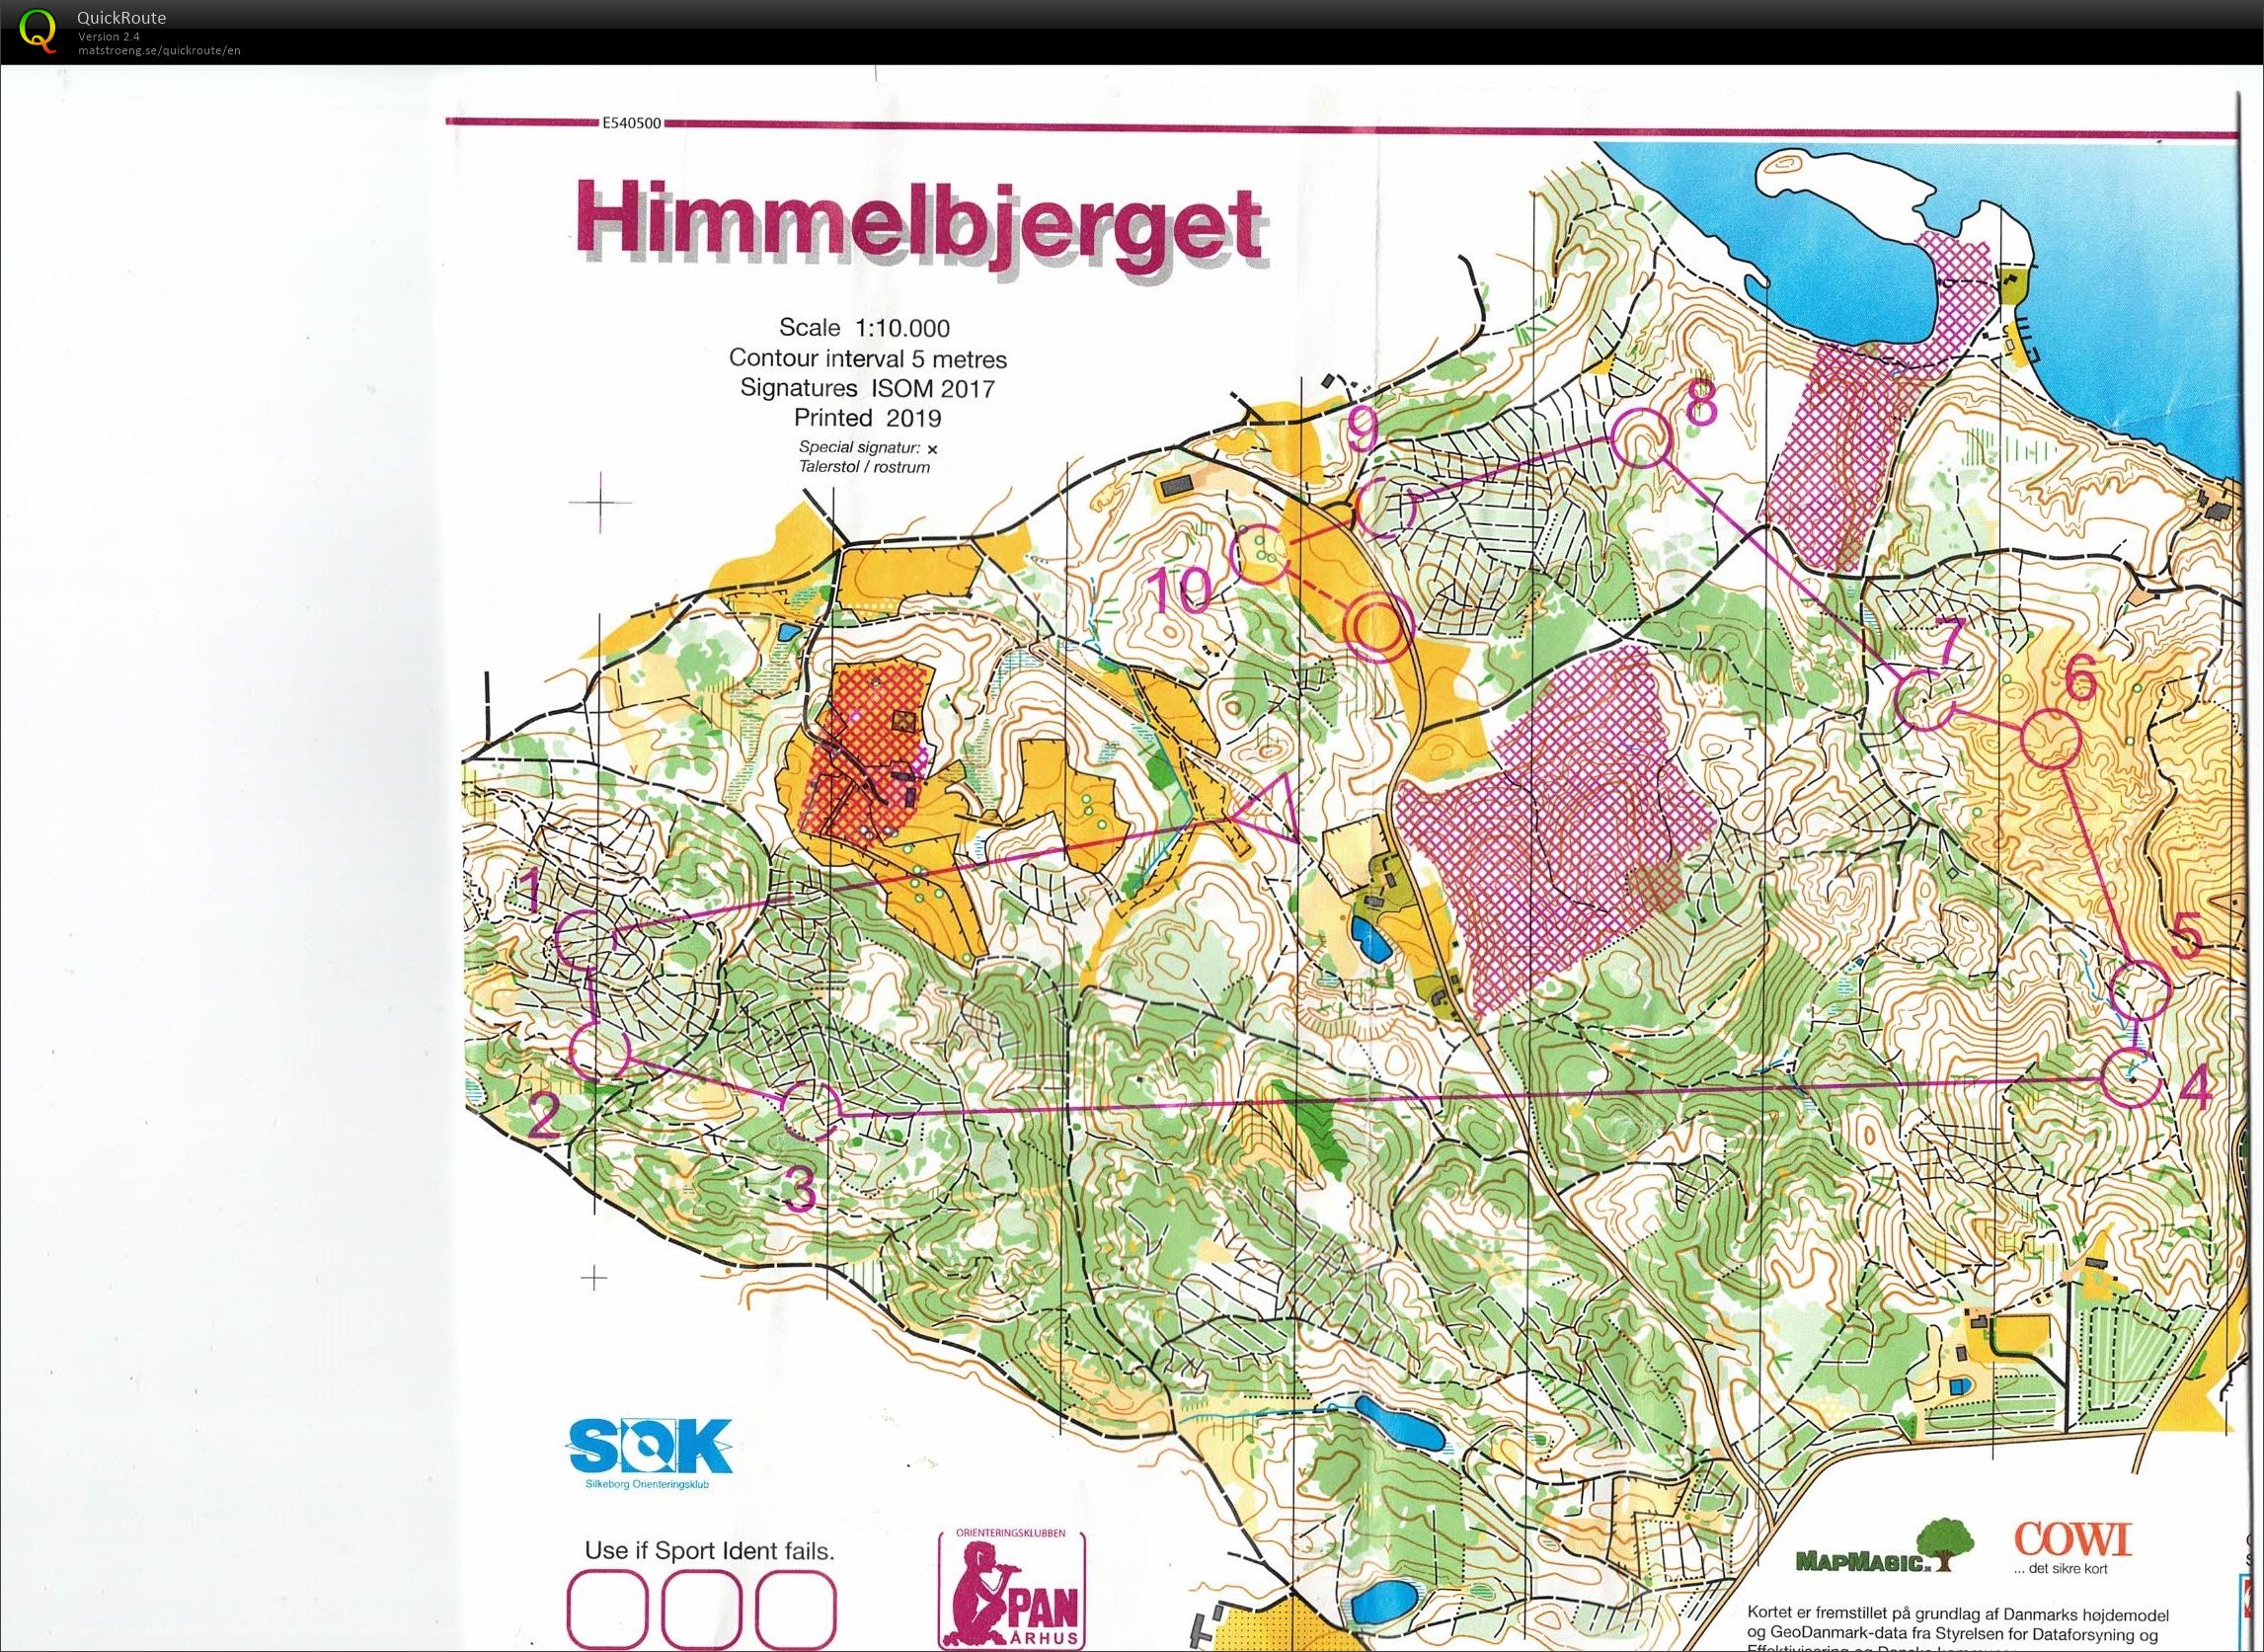 Himmelbjerget, JWOC testløb, Bane Åben 4, Pia Gade, 090619 (09.06.2019)